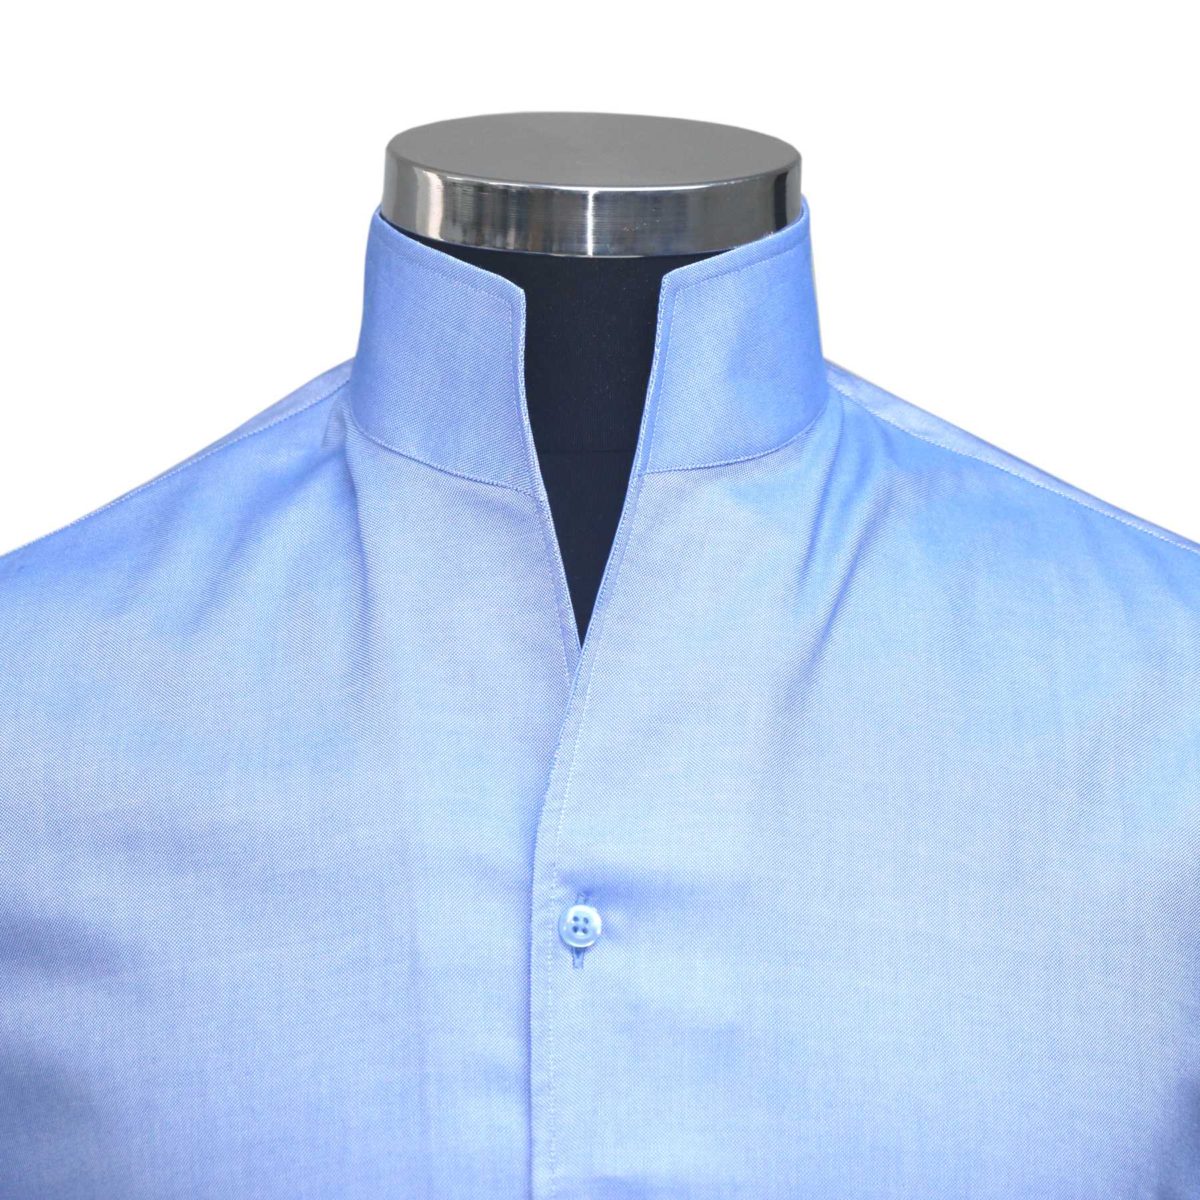 Blue high open collar shirt